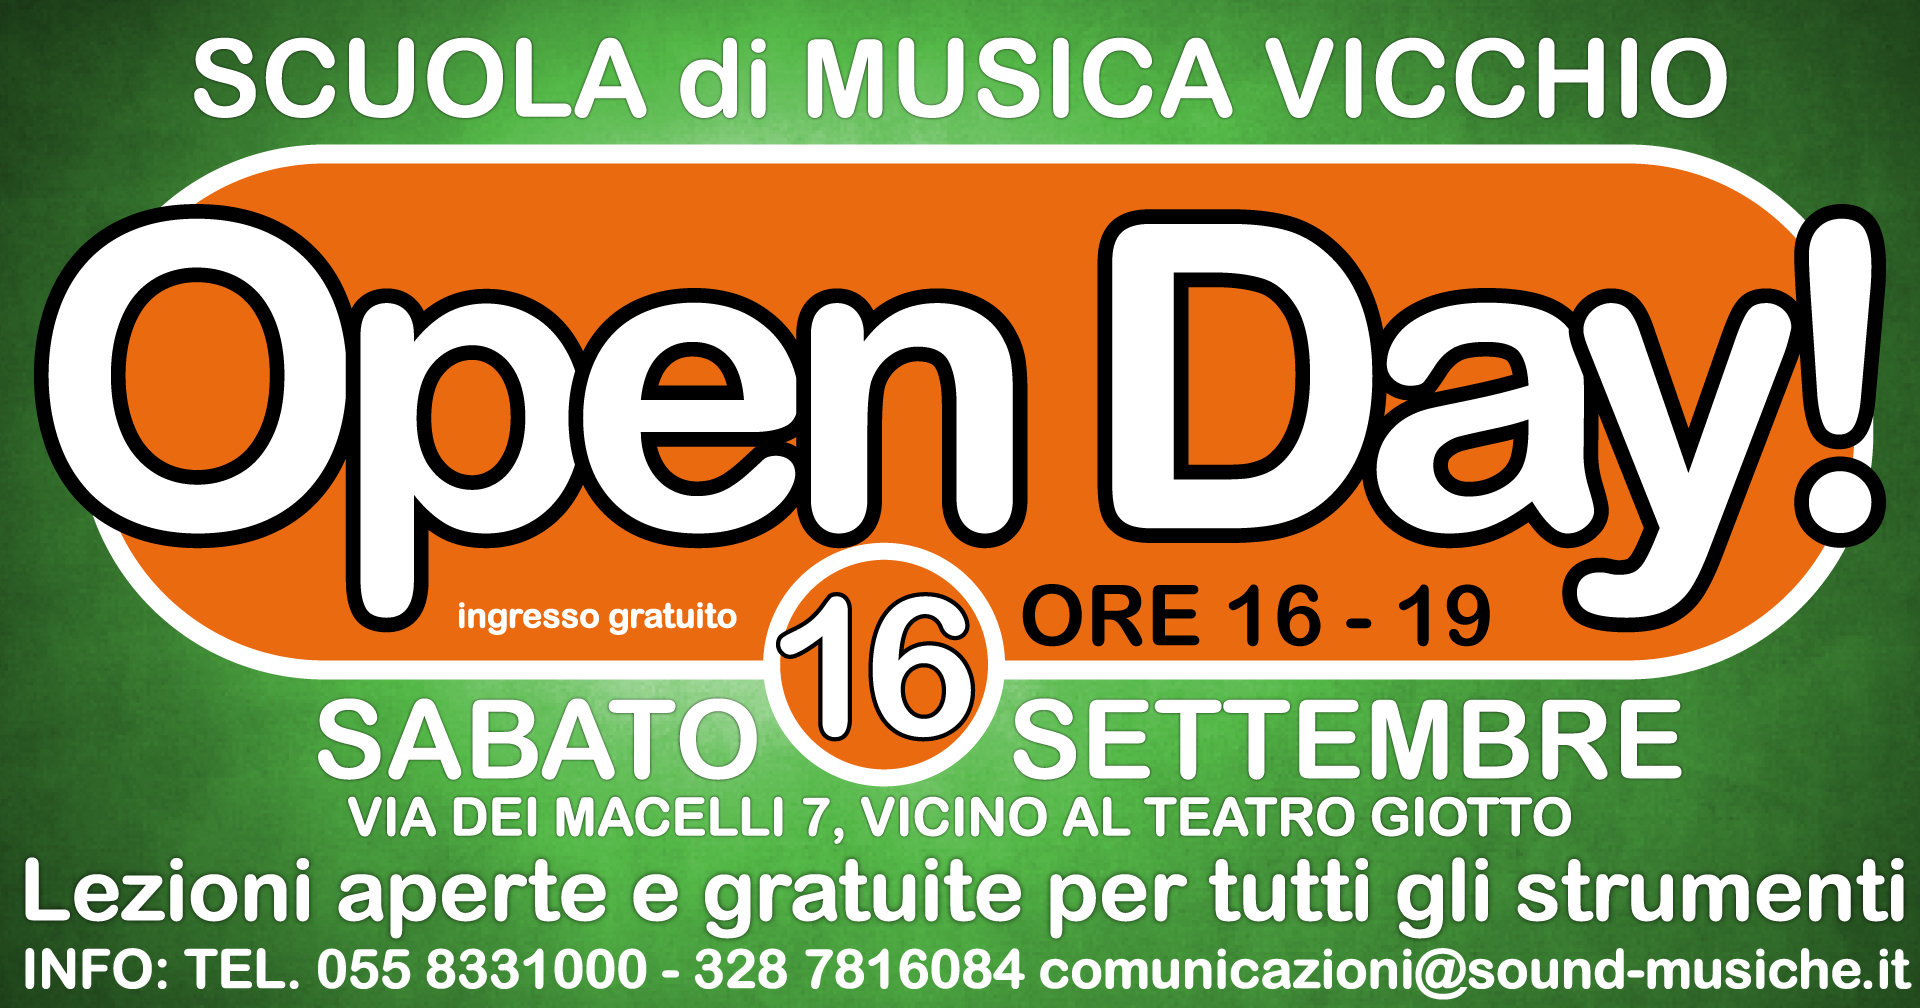 Open Day Vicchio Sabato 16 Settembre 2017 ore 16-19